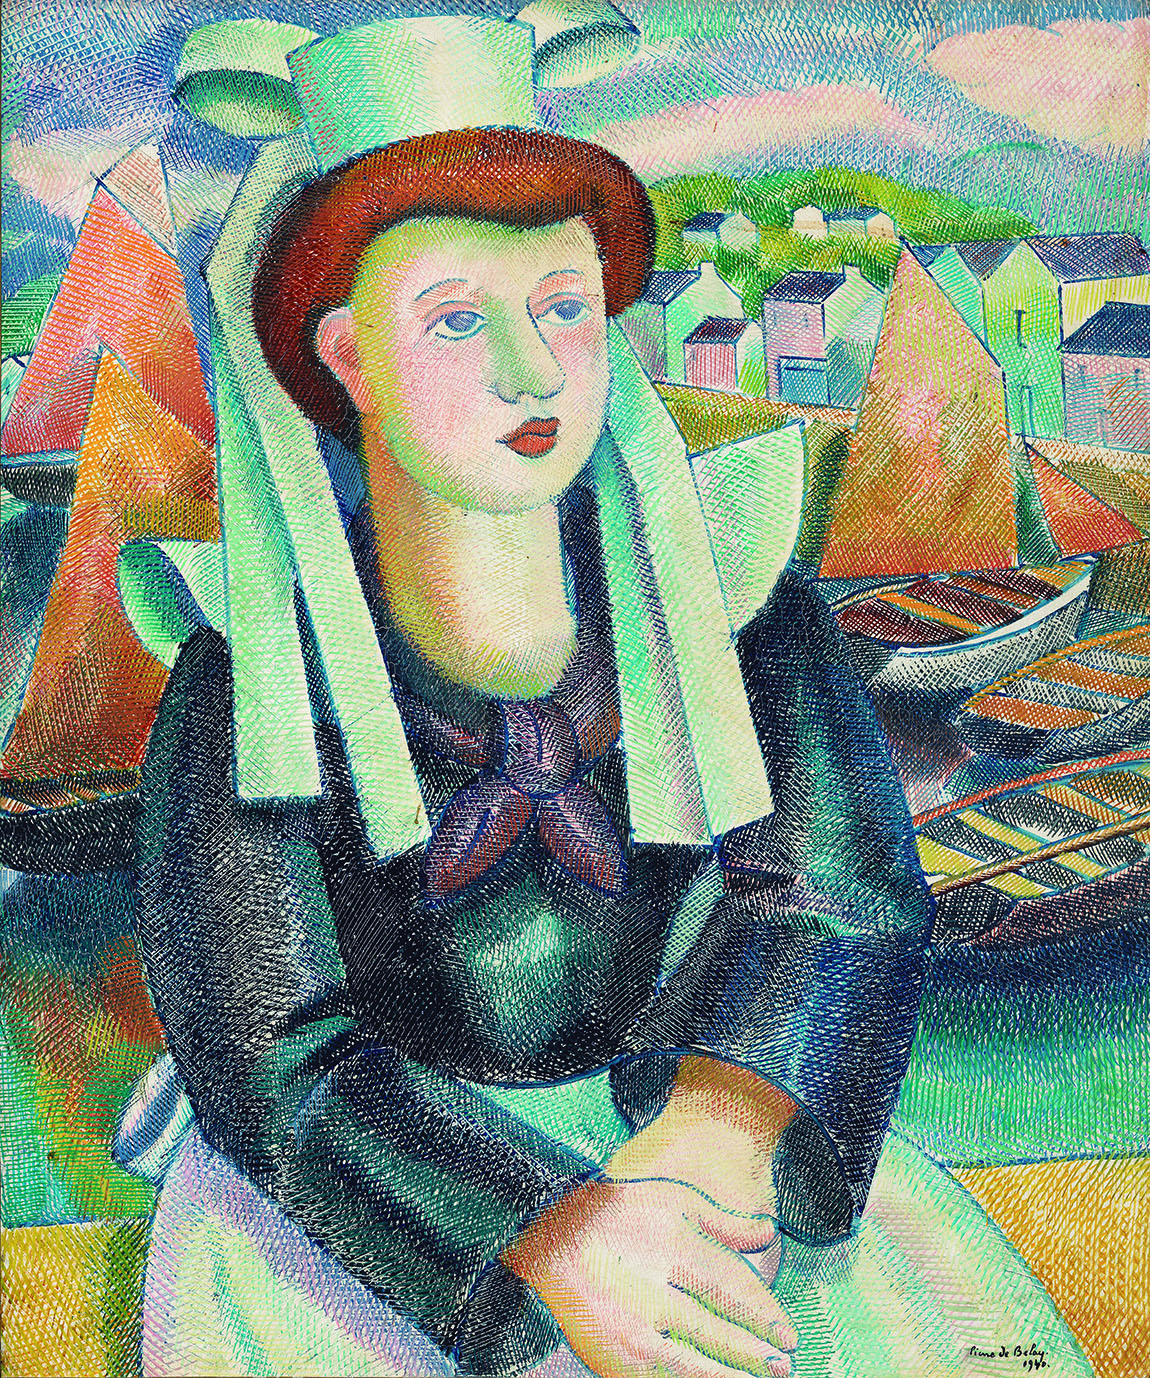 _ピエール・ド・ブレ《ブルターニュの女性》 1940年 カンペール美術館 Collection du musee des beaux-arts de Quimper, France